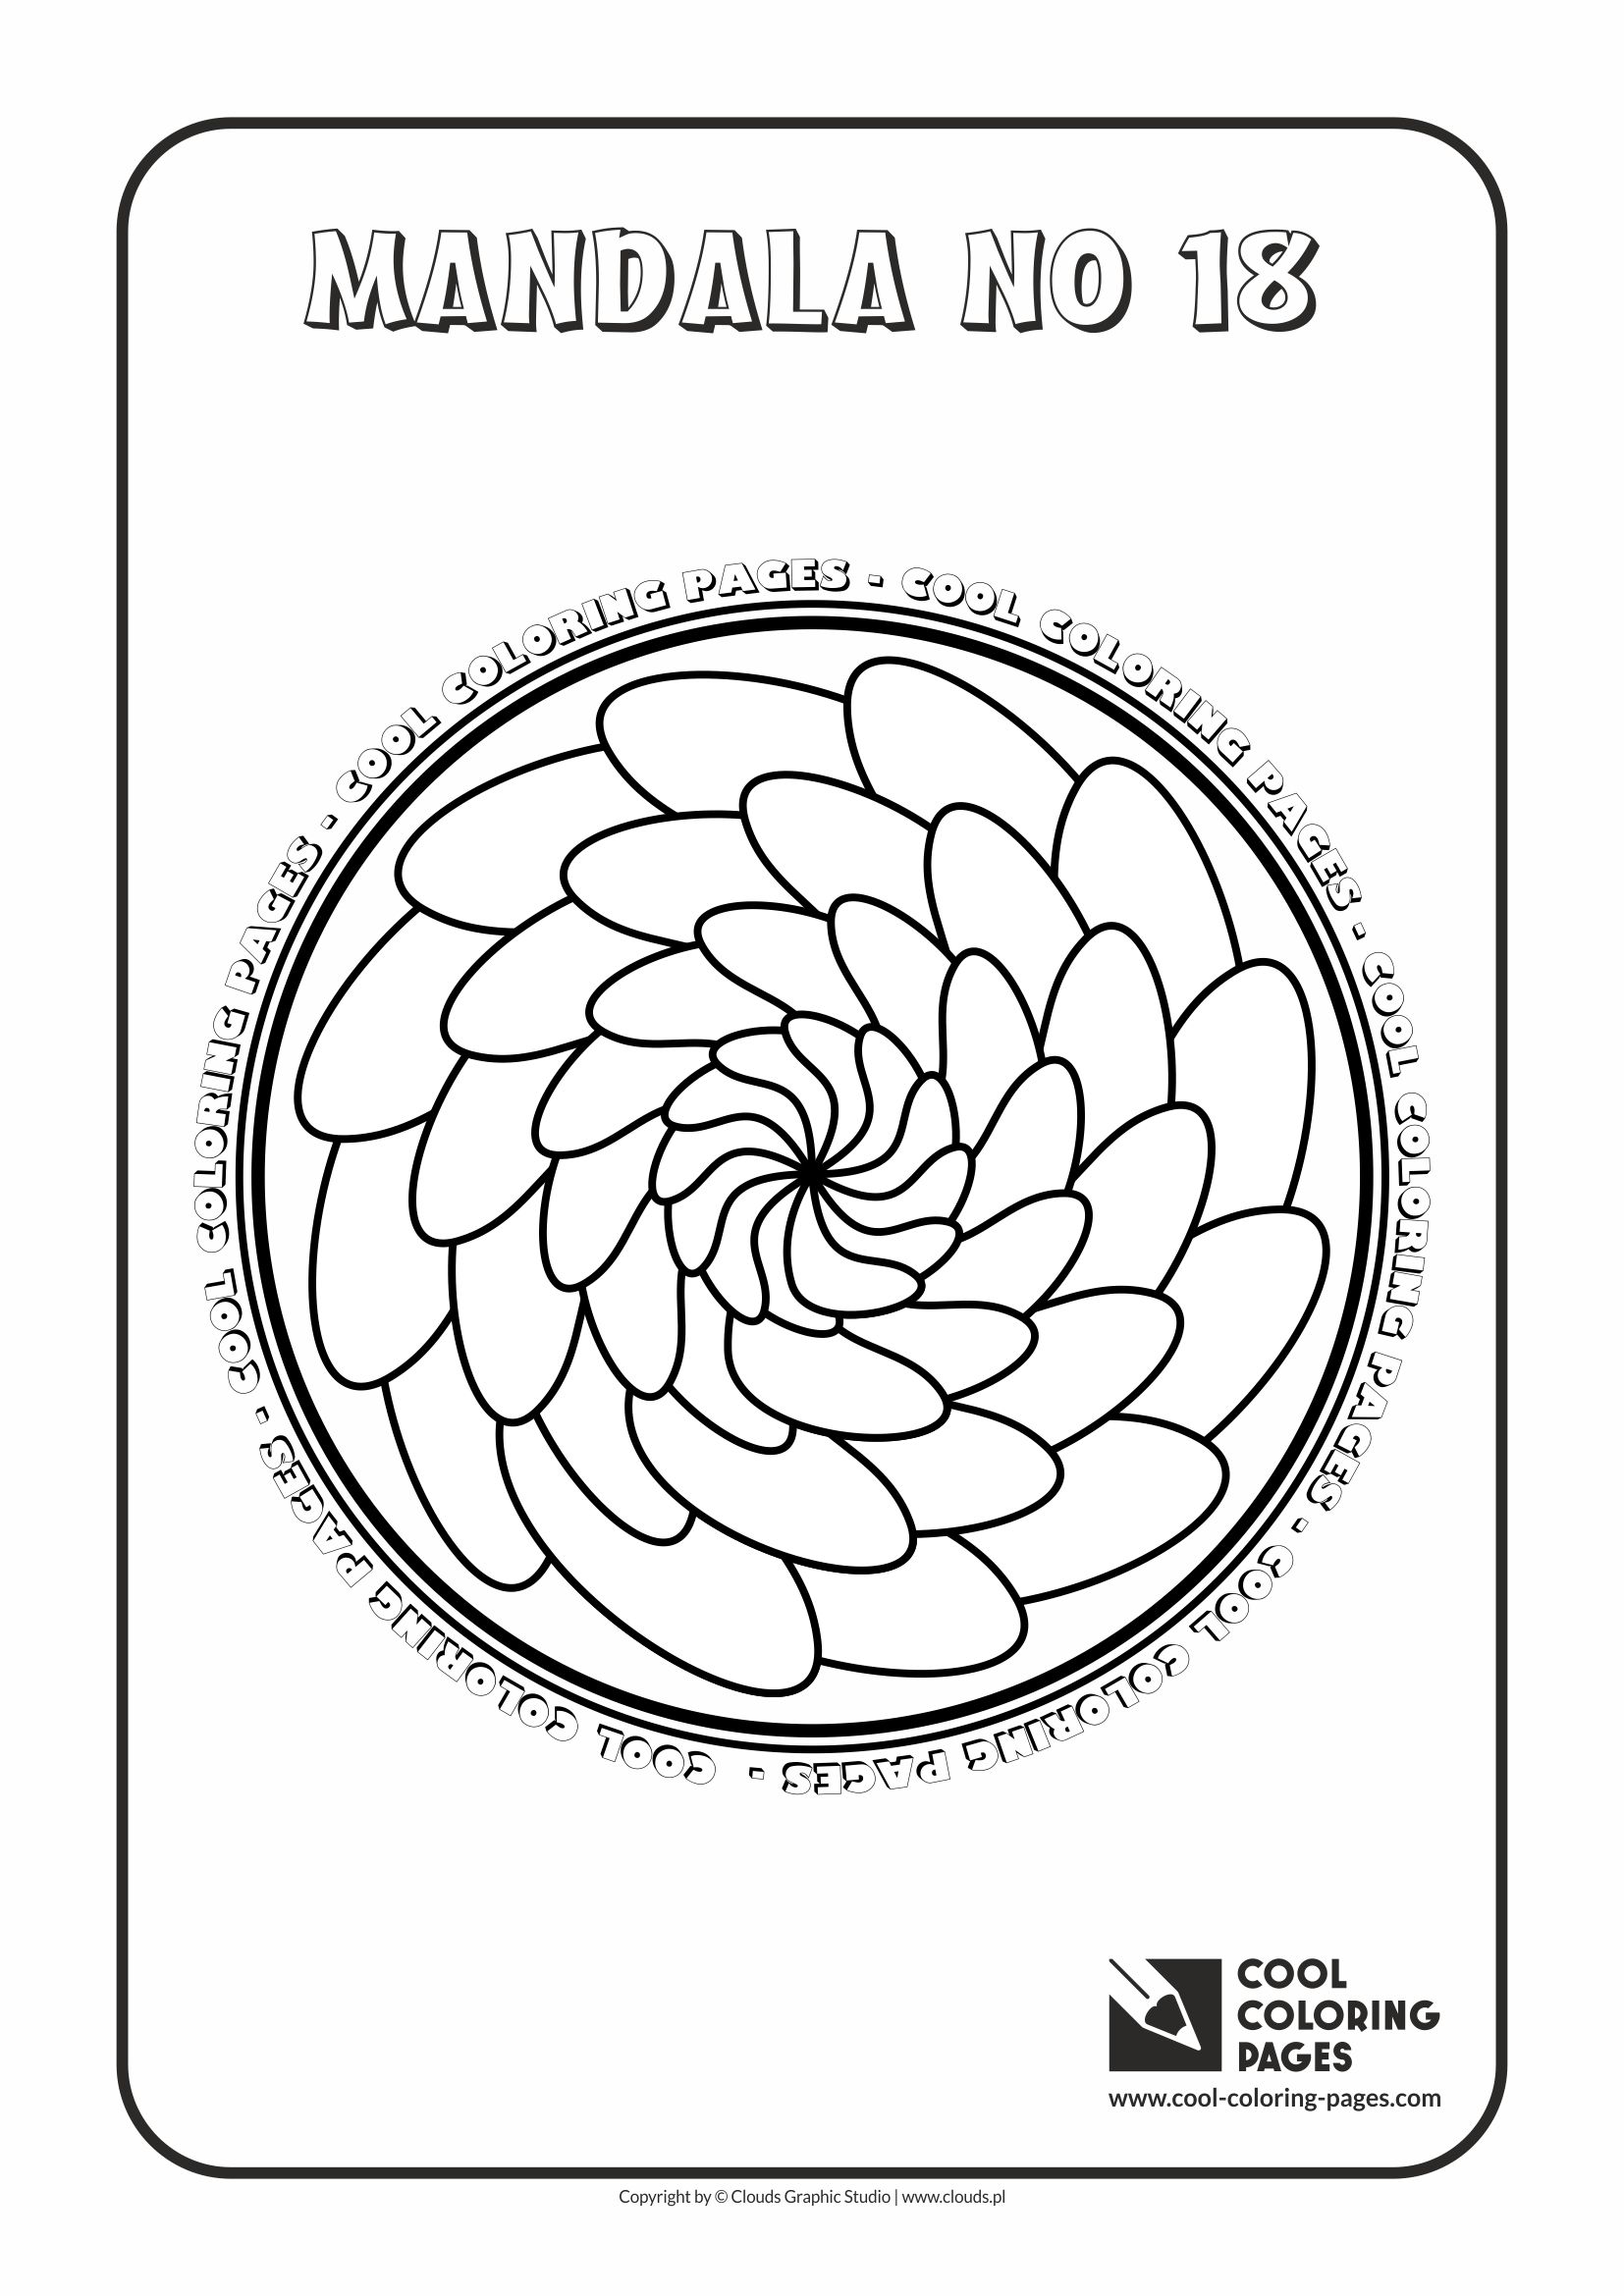 Cool Coloring Pages - Mandalas / Mandala no 18